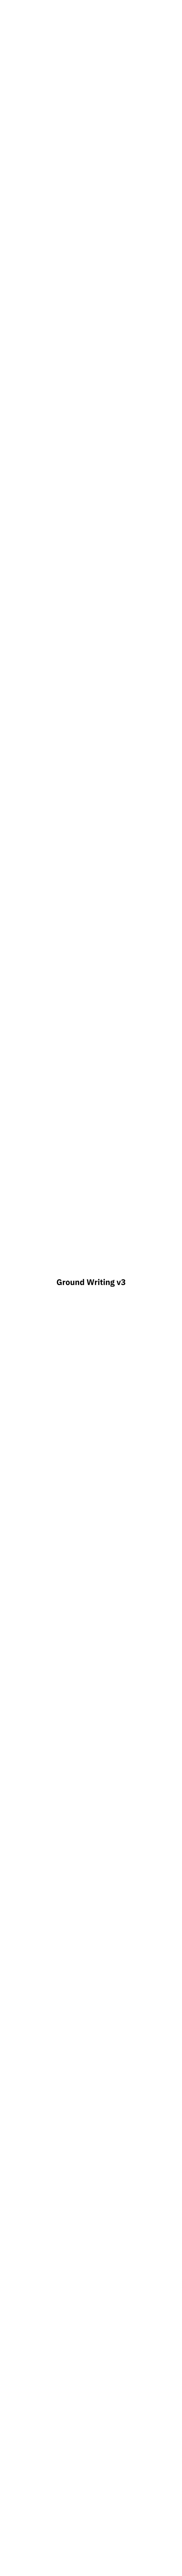 Ground-Writing.Pdf